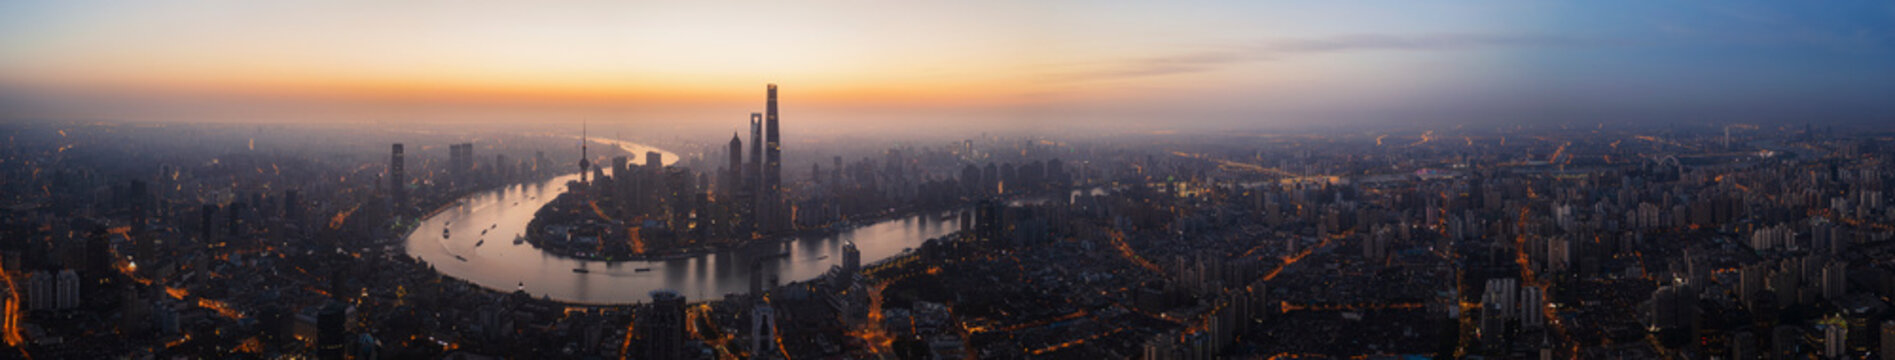 shanghai sunrise